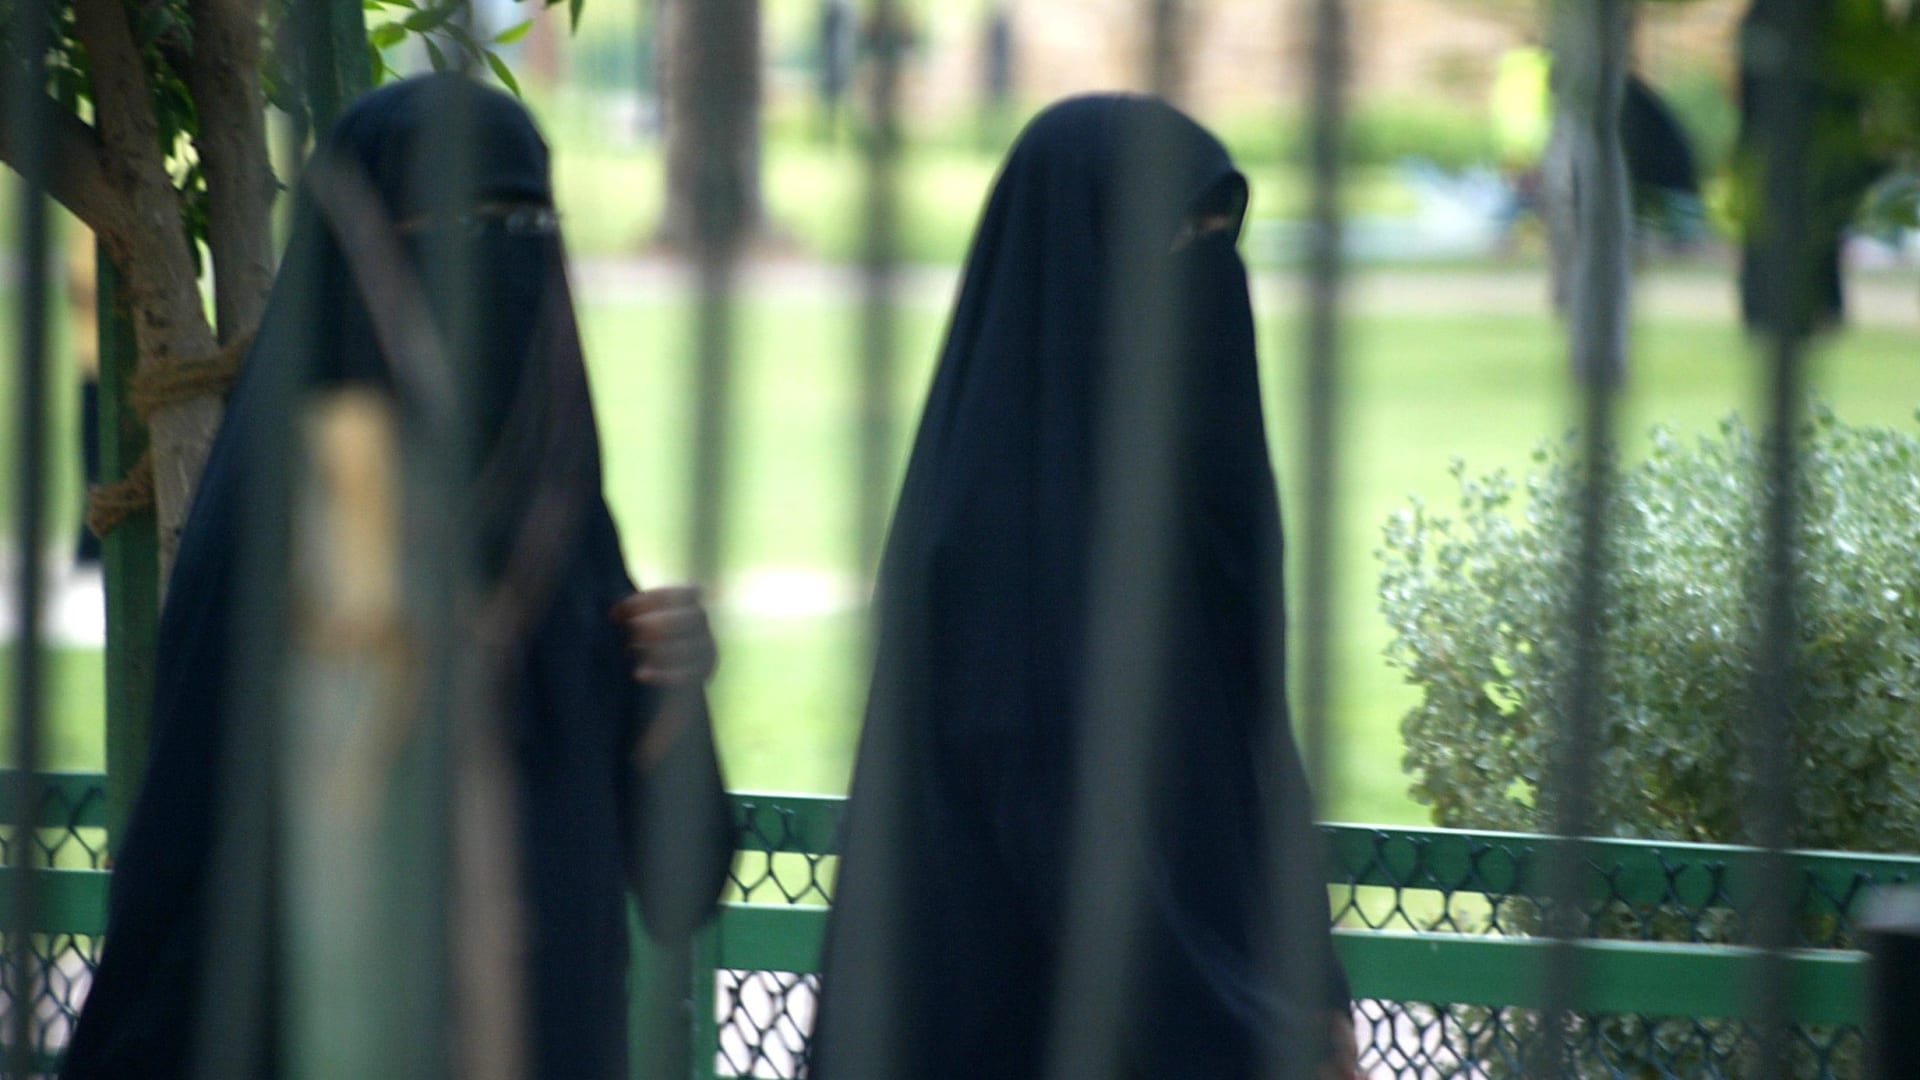 تطبيق "رحلة الهولوغرام" لجولة افتراضية في السعودية